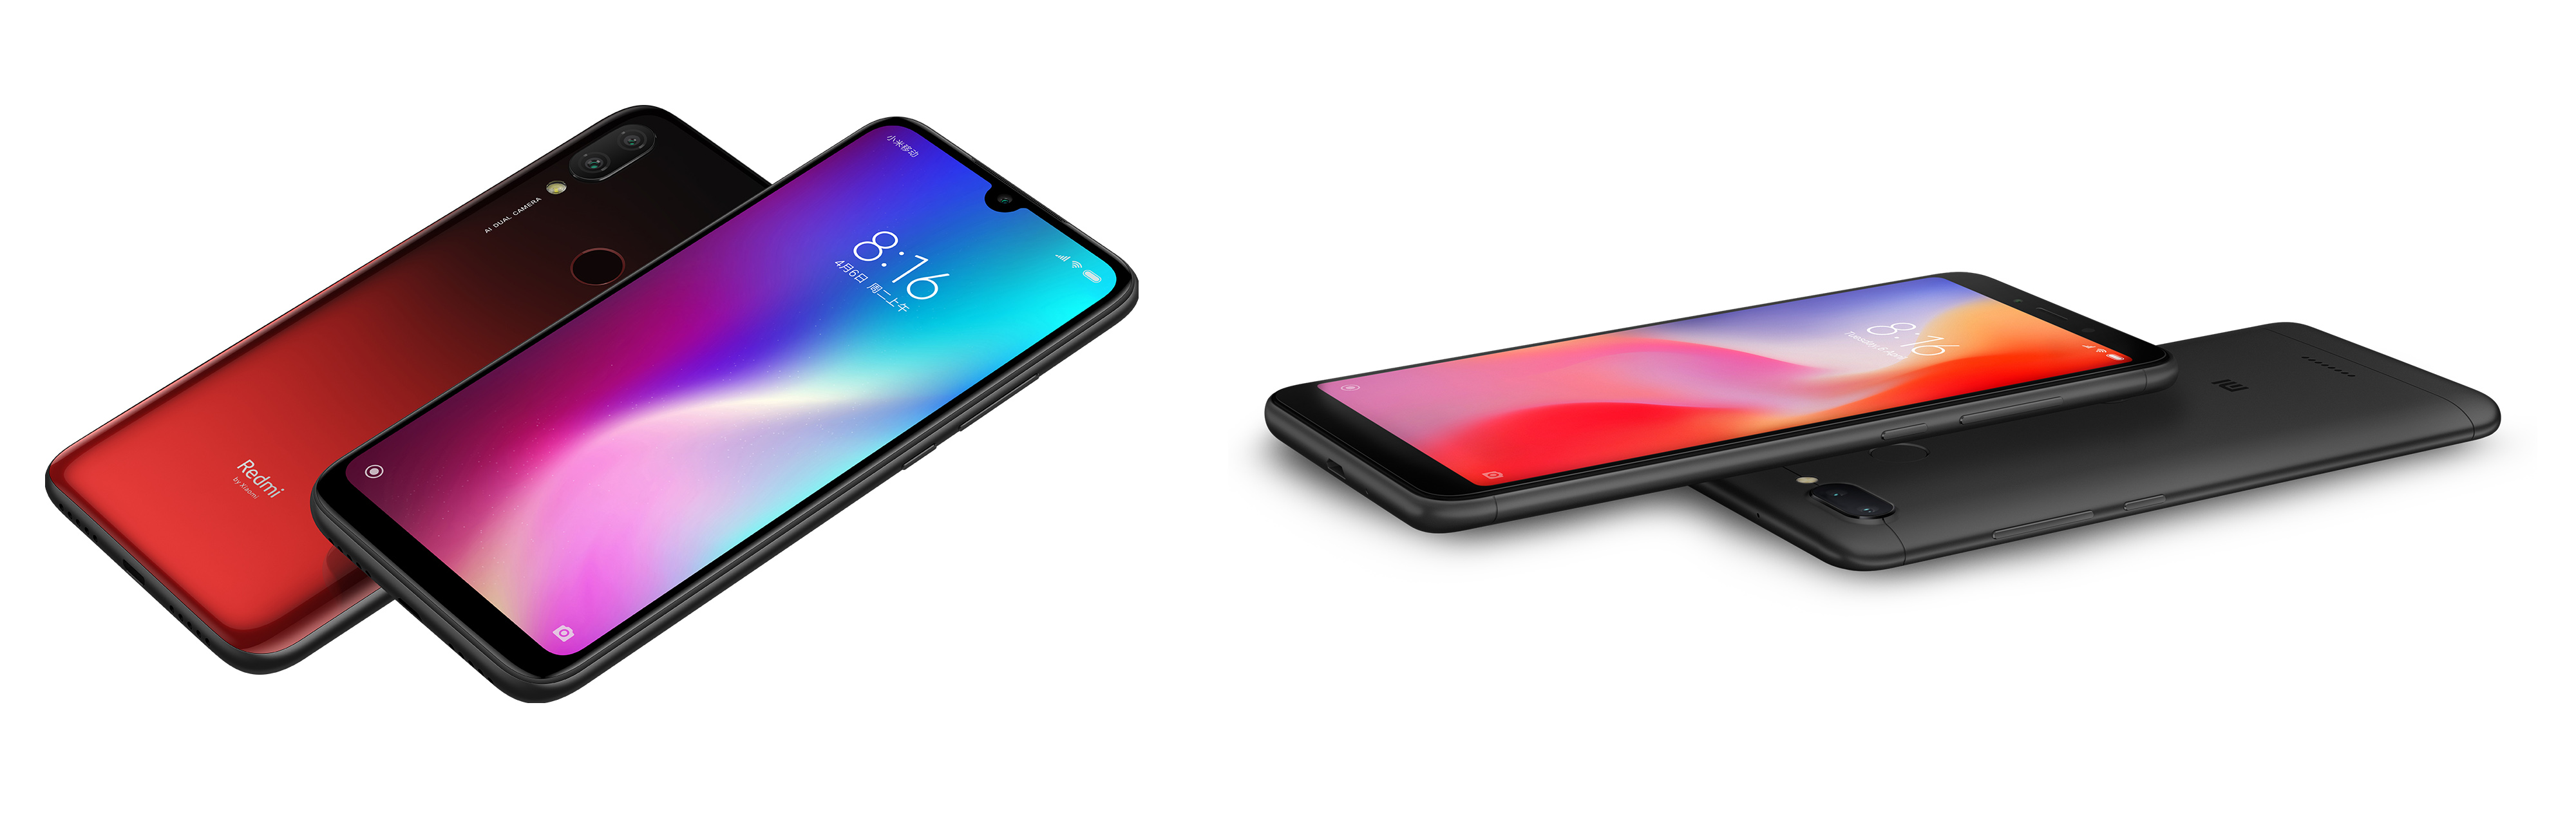 Сравнение смартфонов Redmi 7 2019 года выпуска и Redmi 6 2018 года